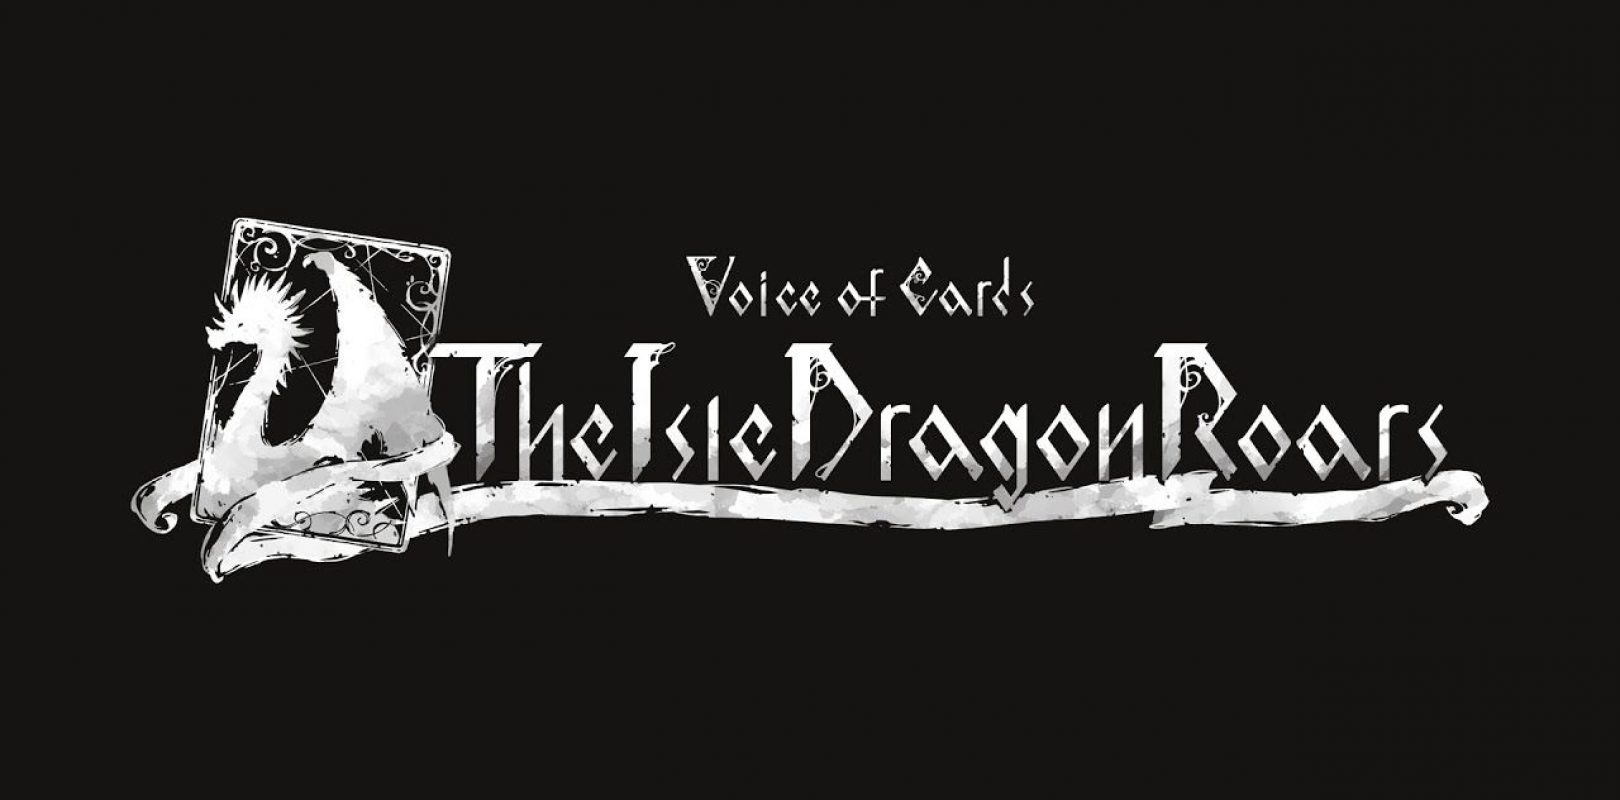 Voice of Cards: The Isle Dragon Roars – Data di uscita